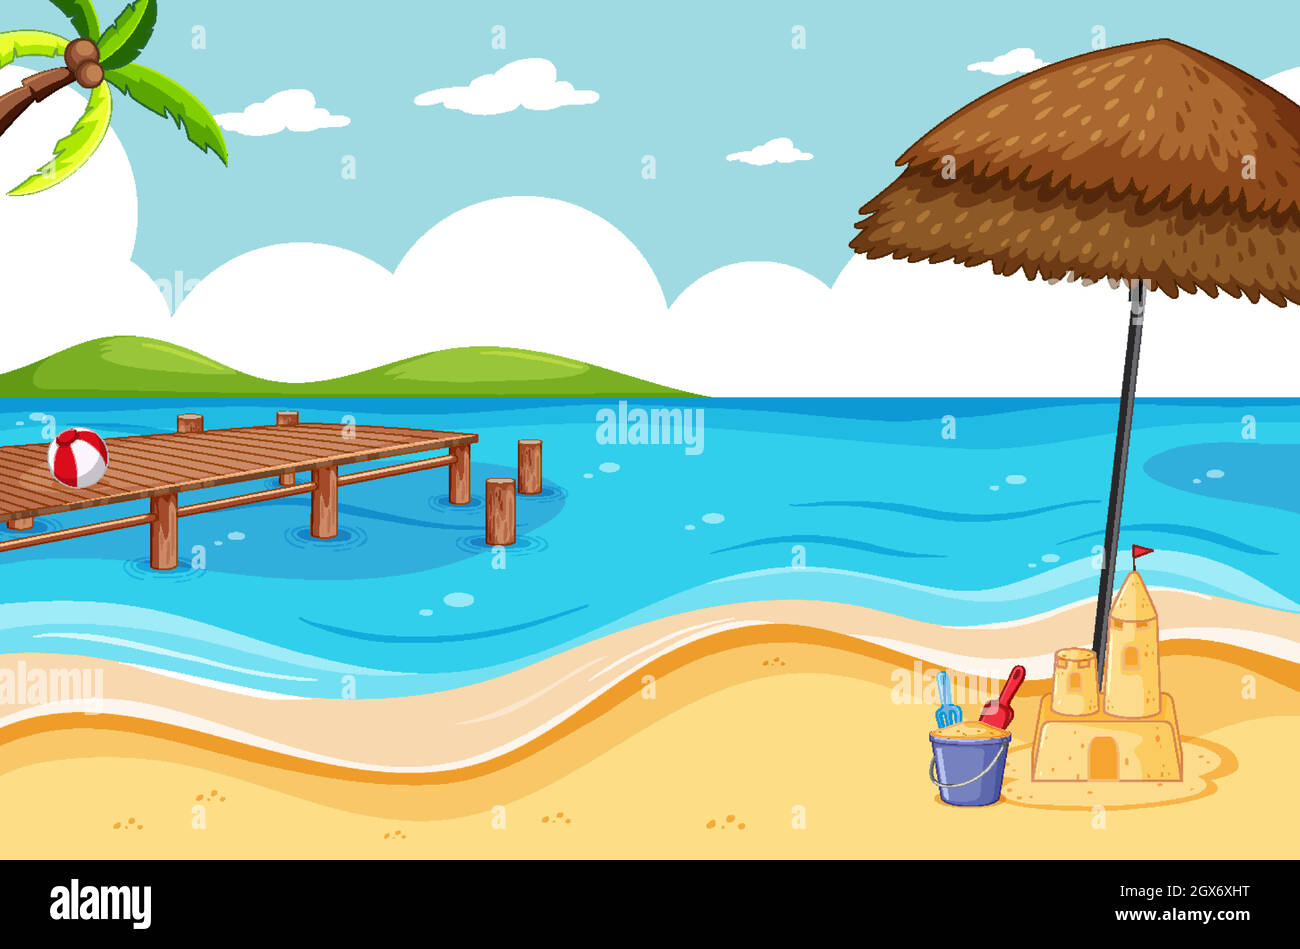 Tropical beach and sand beach scene cartoon style Stock Vector